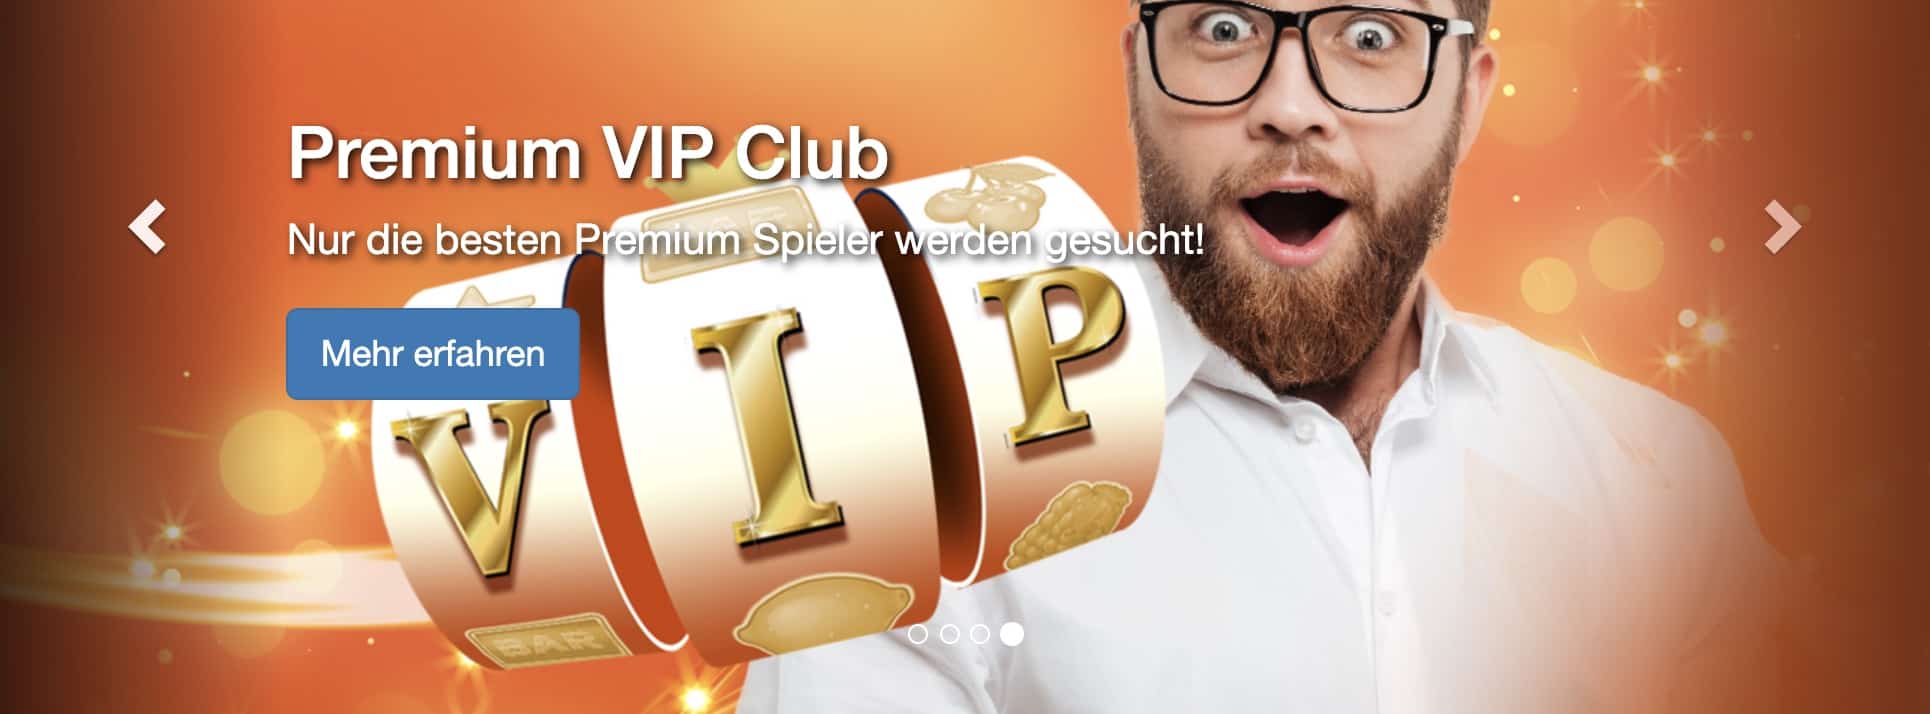 Premium VIP Club